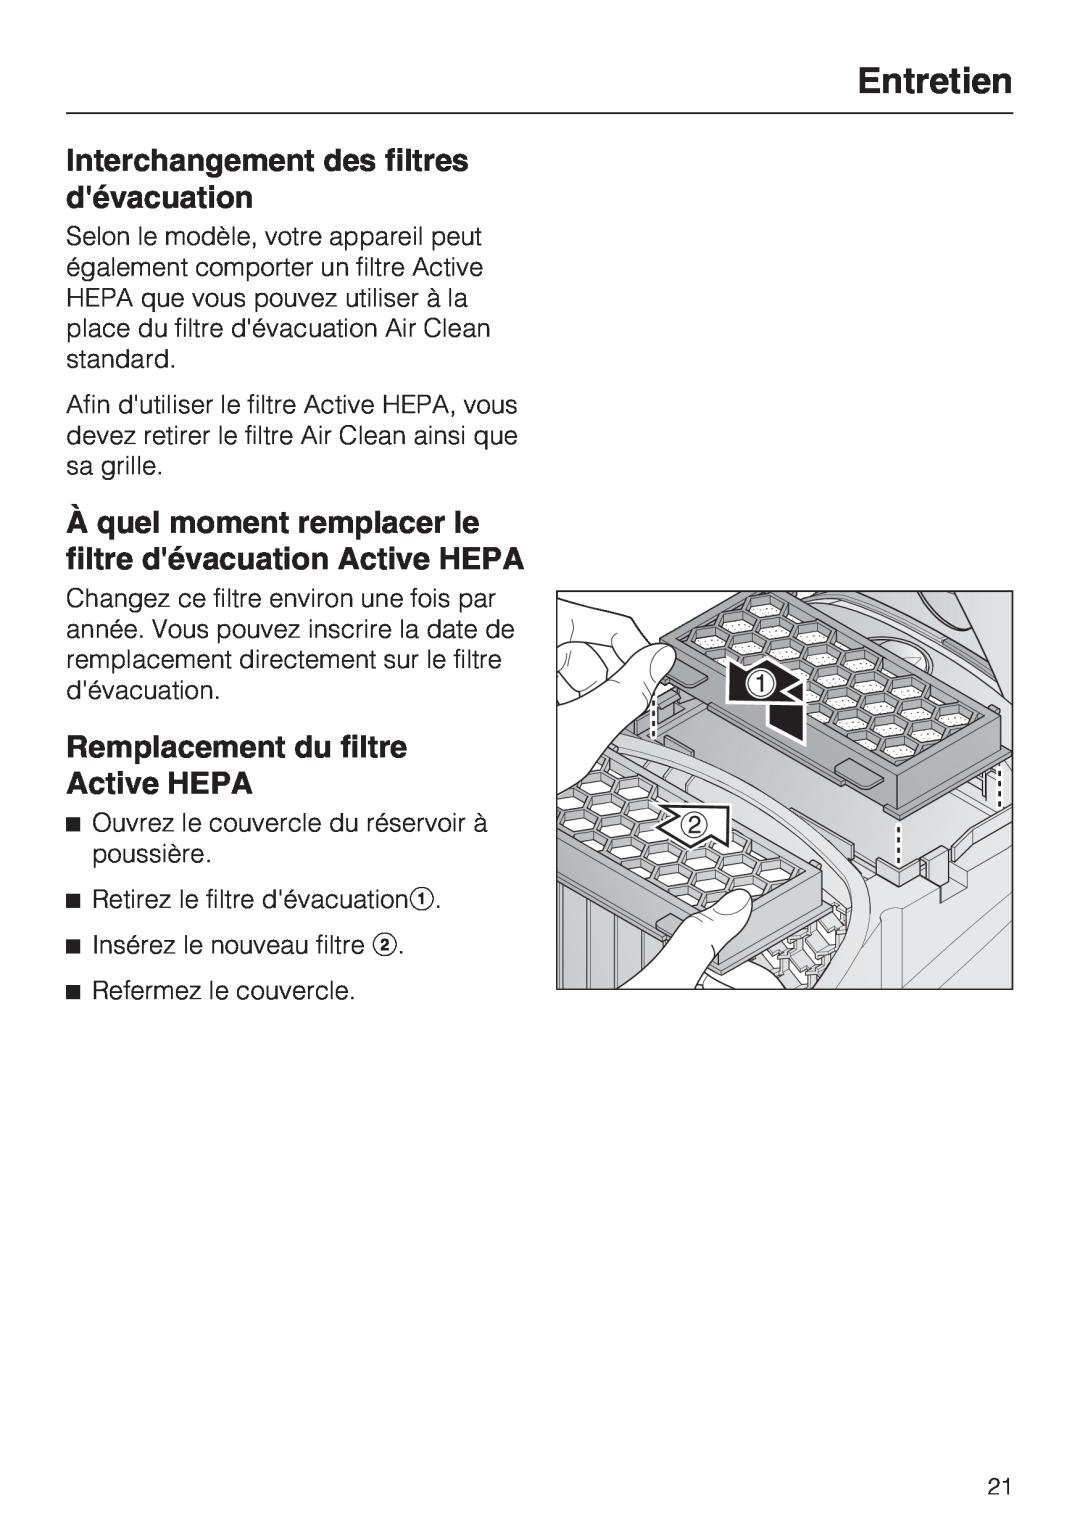 Miele S 2001 manual Interchangement des filtres dévacuation, Remplacement du filtre Active HEPA, Entretien 